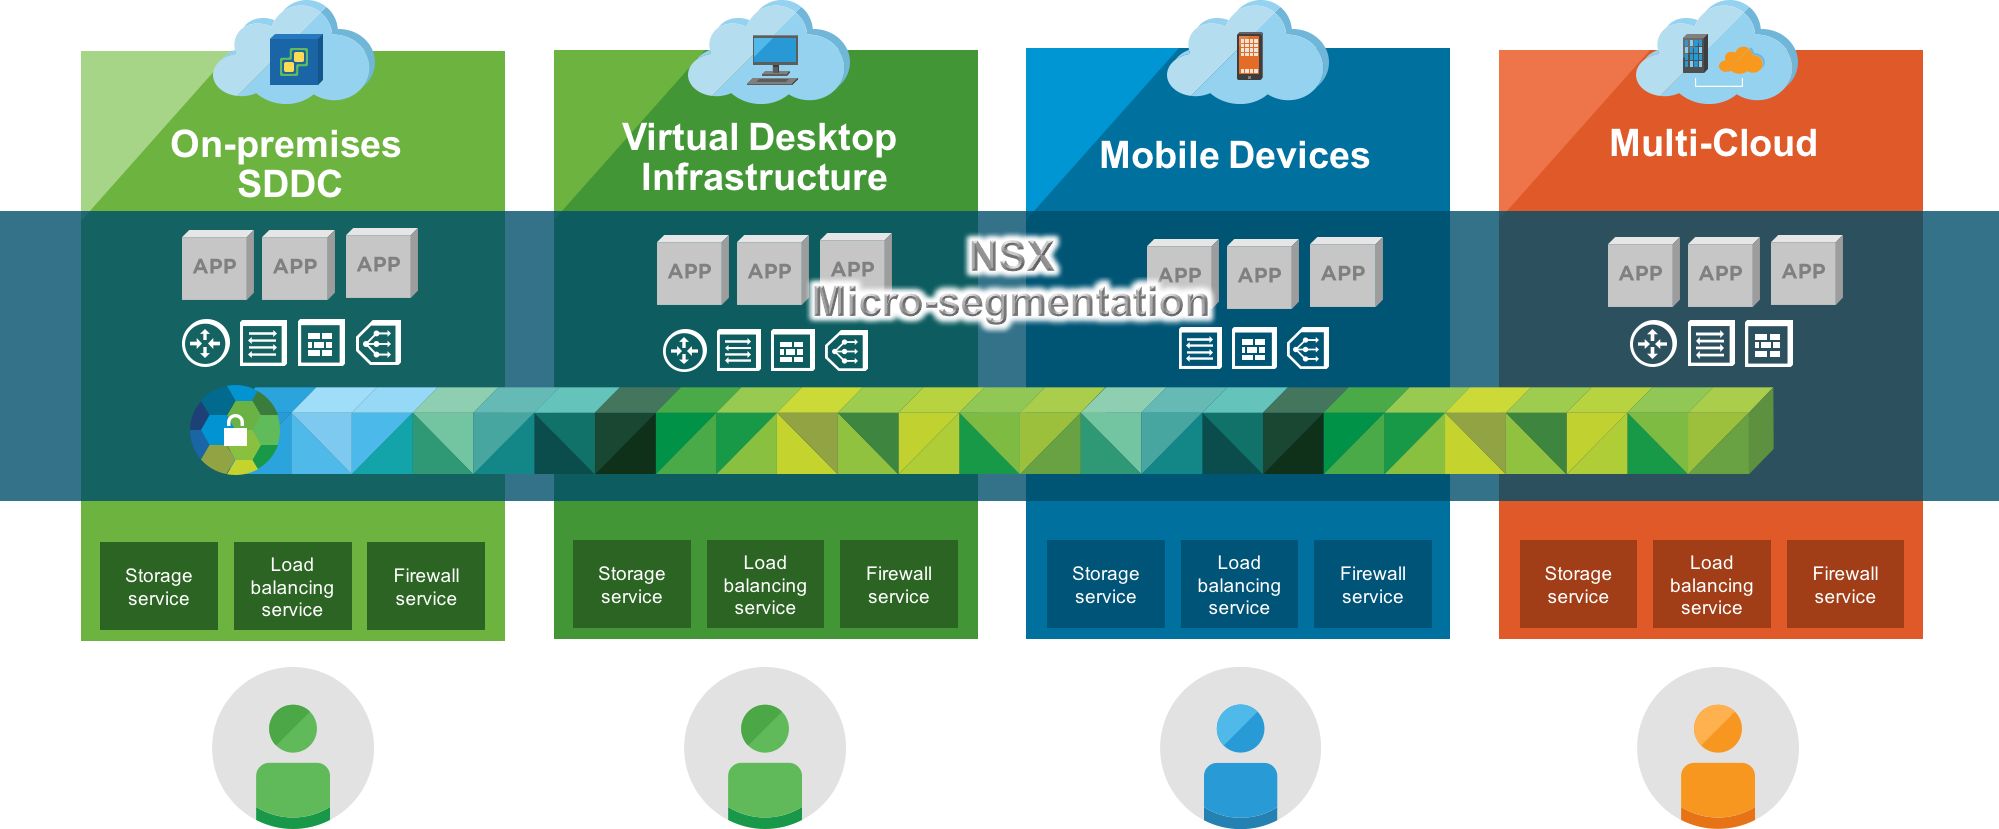 Micro-segmentation with VMware NSX